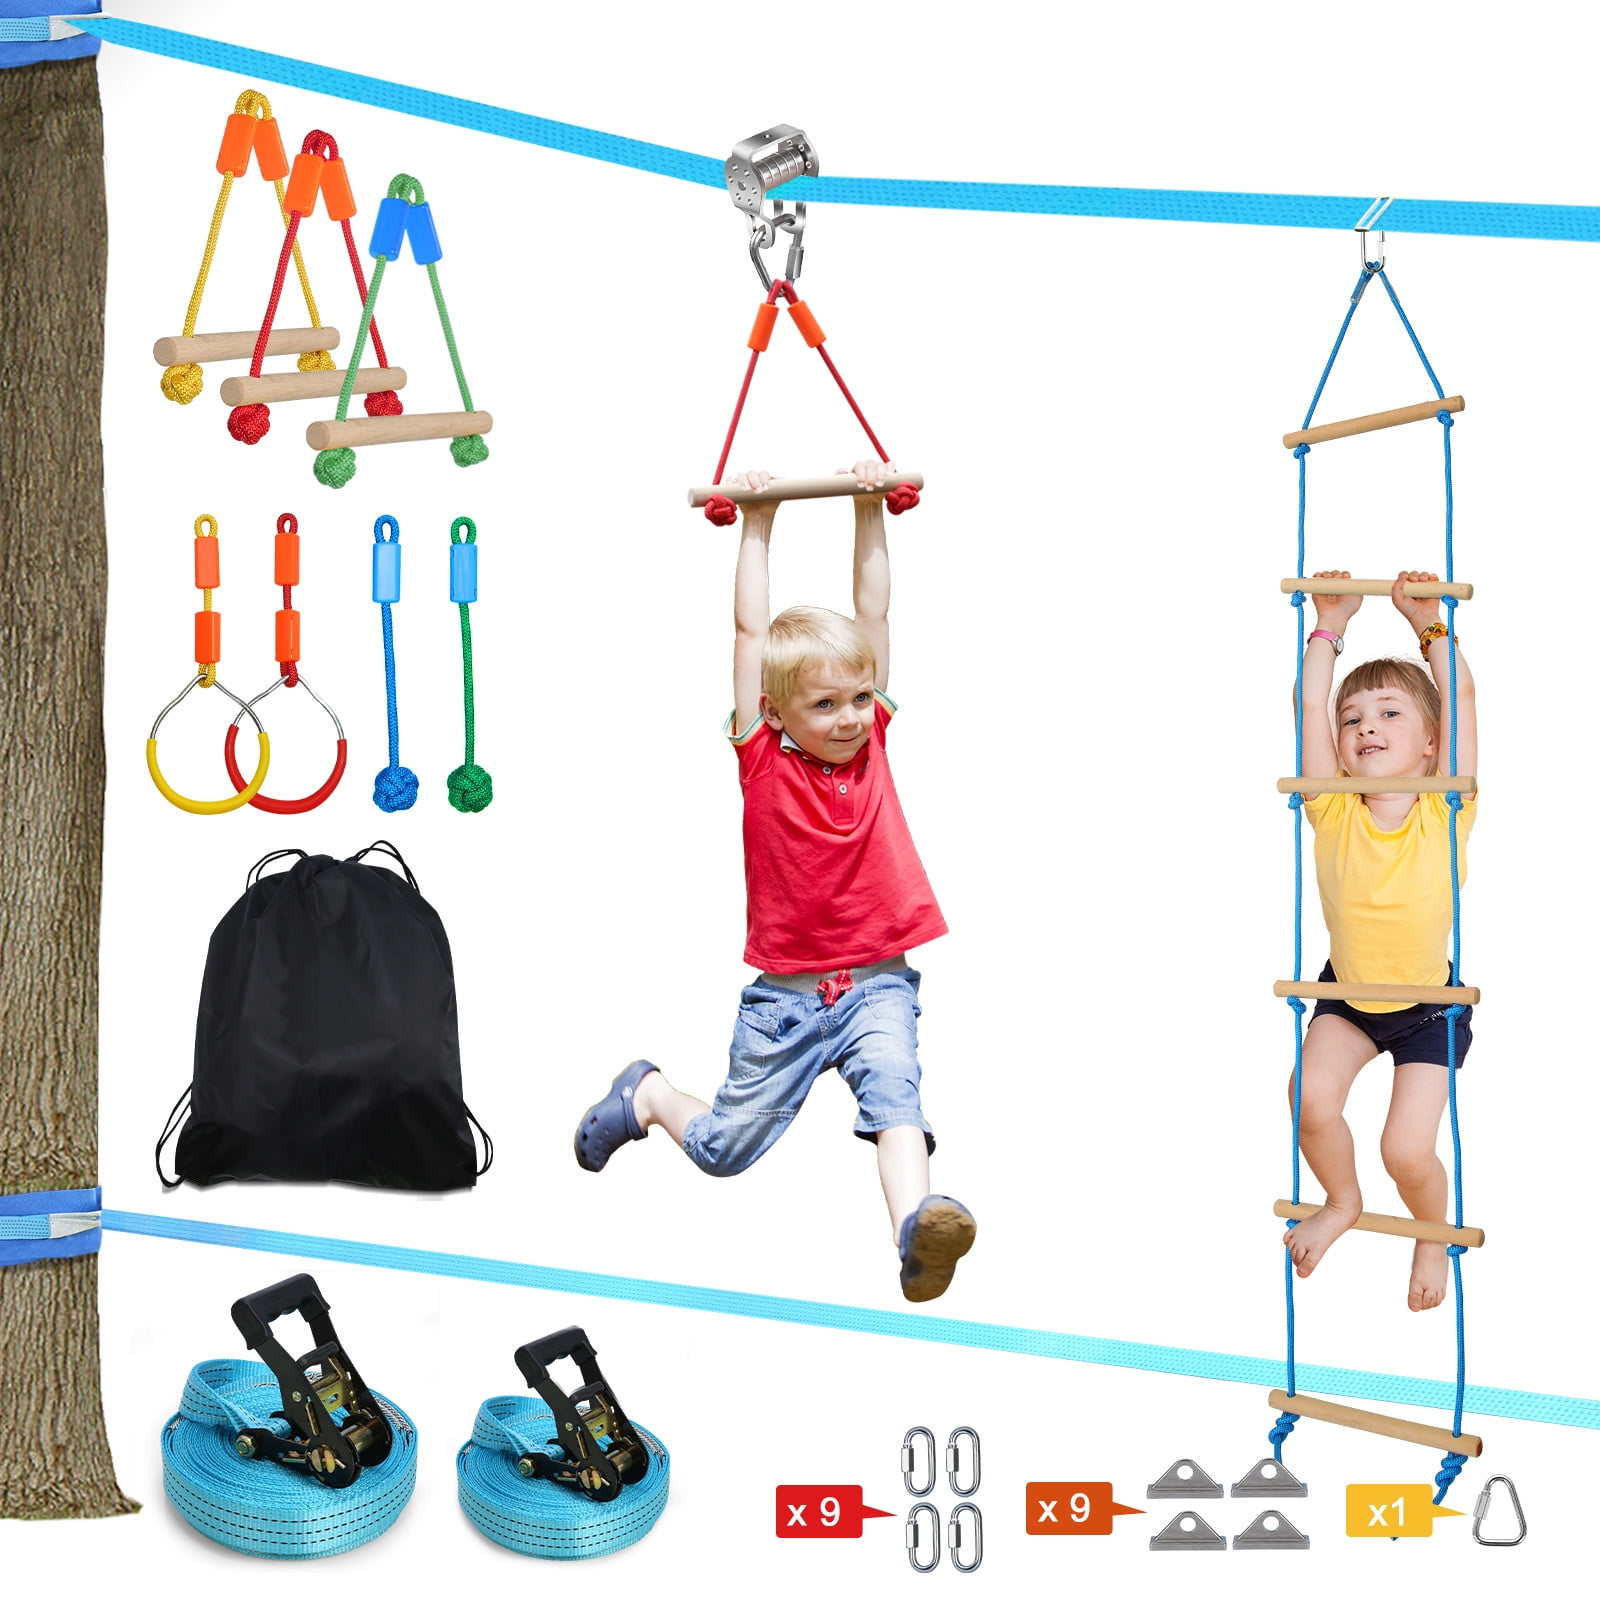 Details about   Ninja Line Jungle Swing Set 50' Hanging Obstacle Course Slackline Monkey Bar Kit 